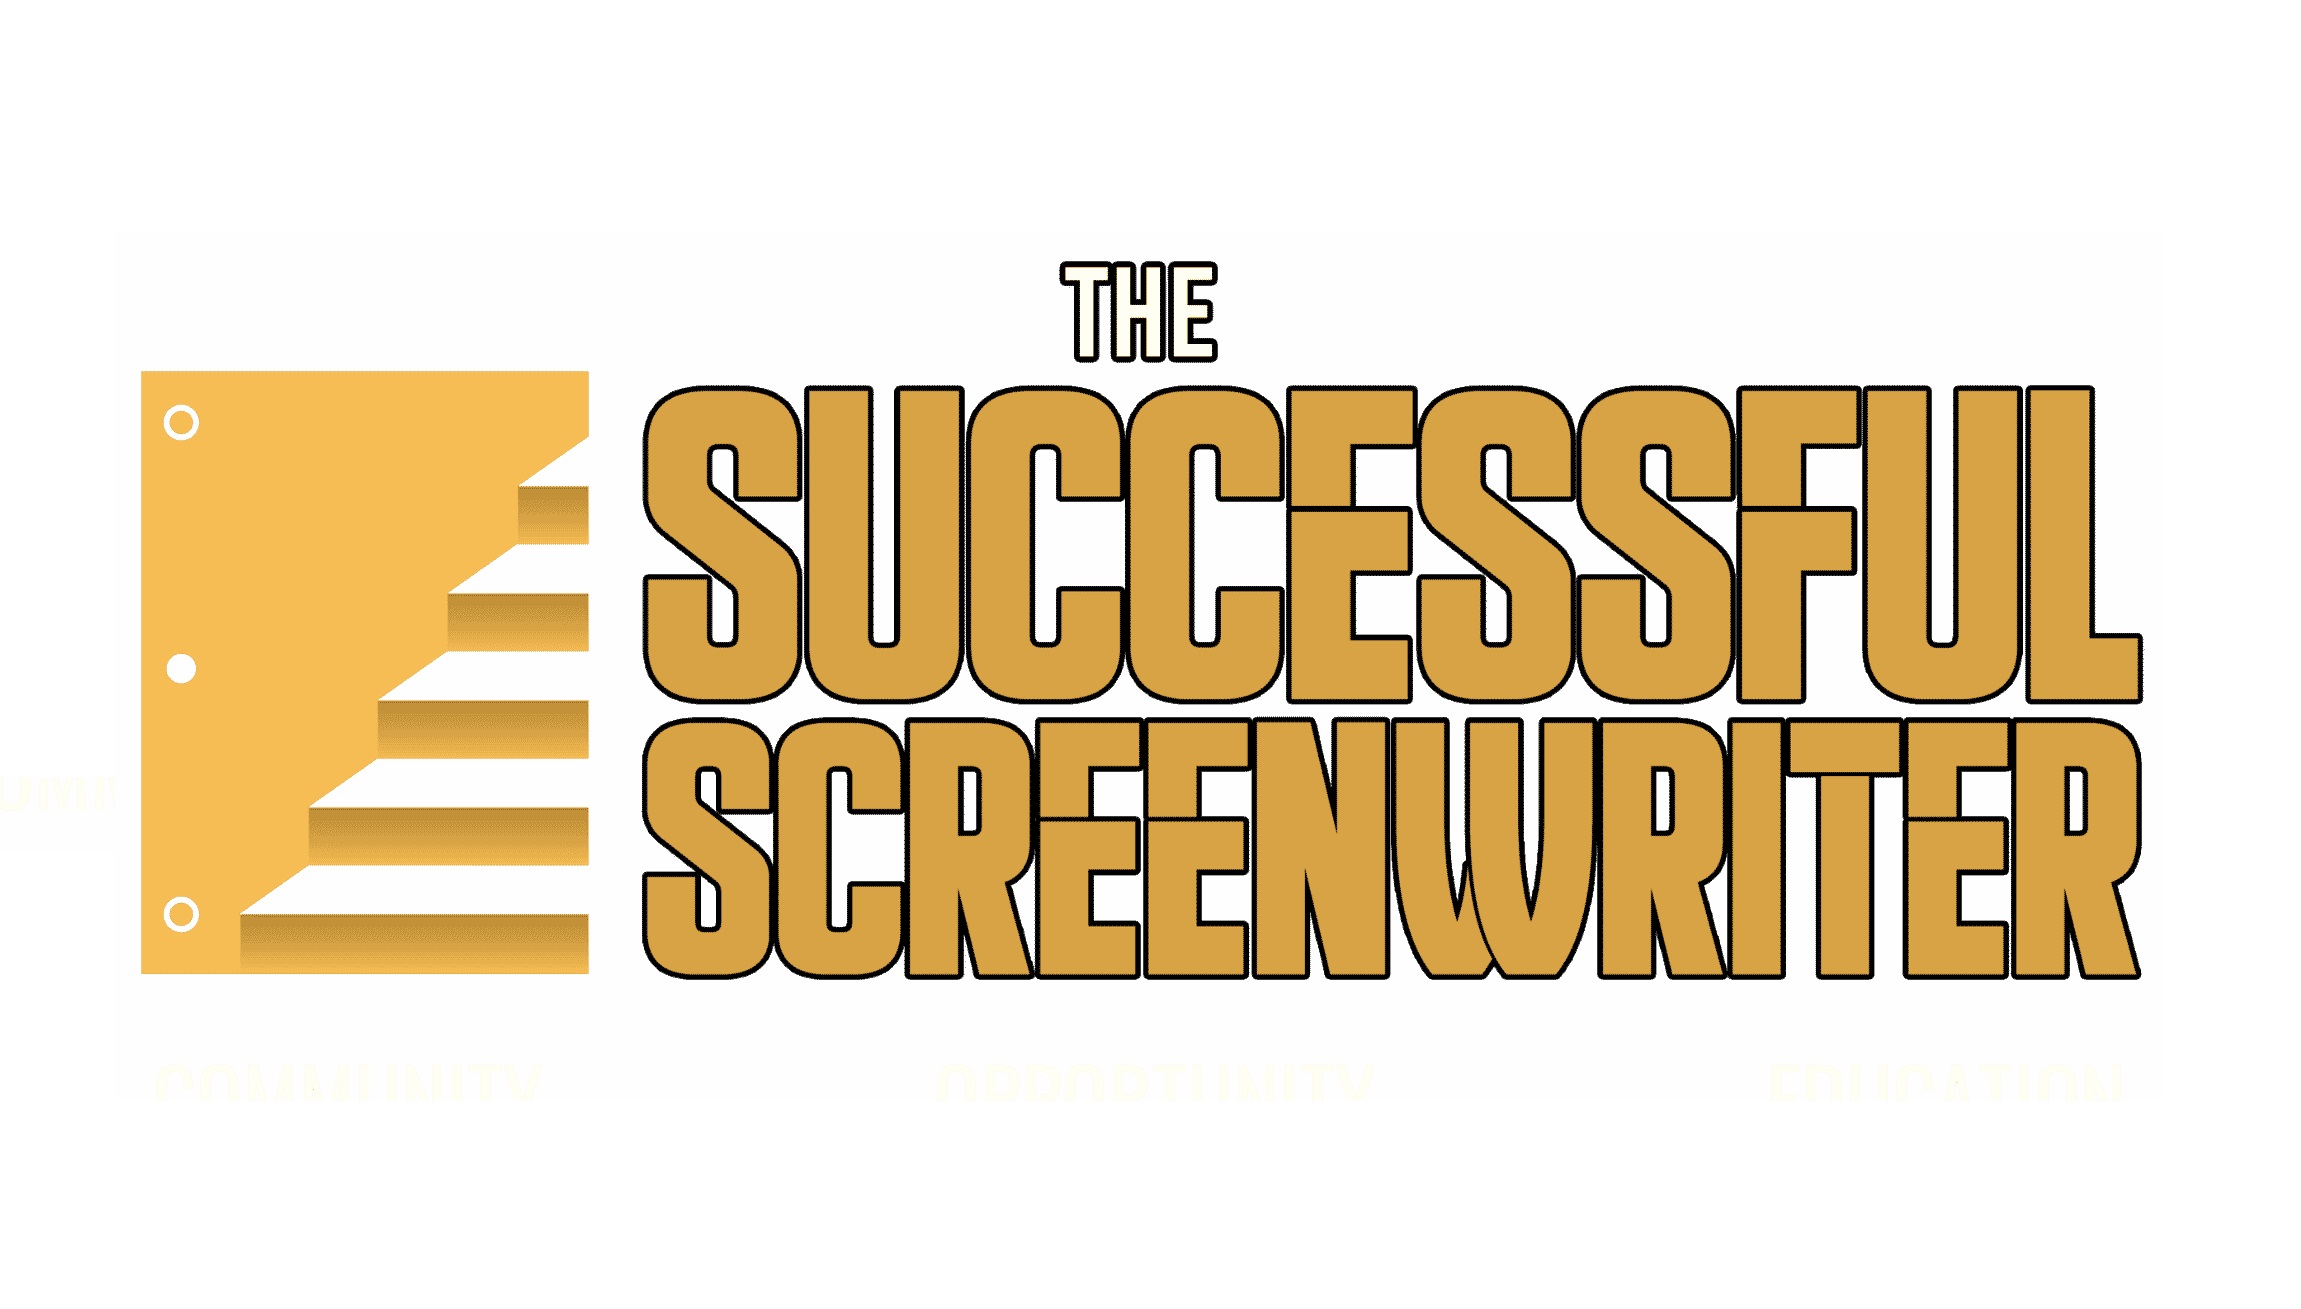 The Successful Screenwriter